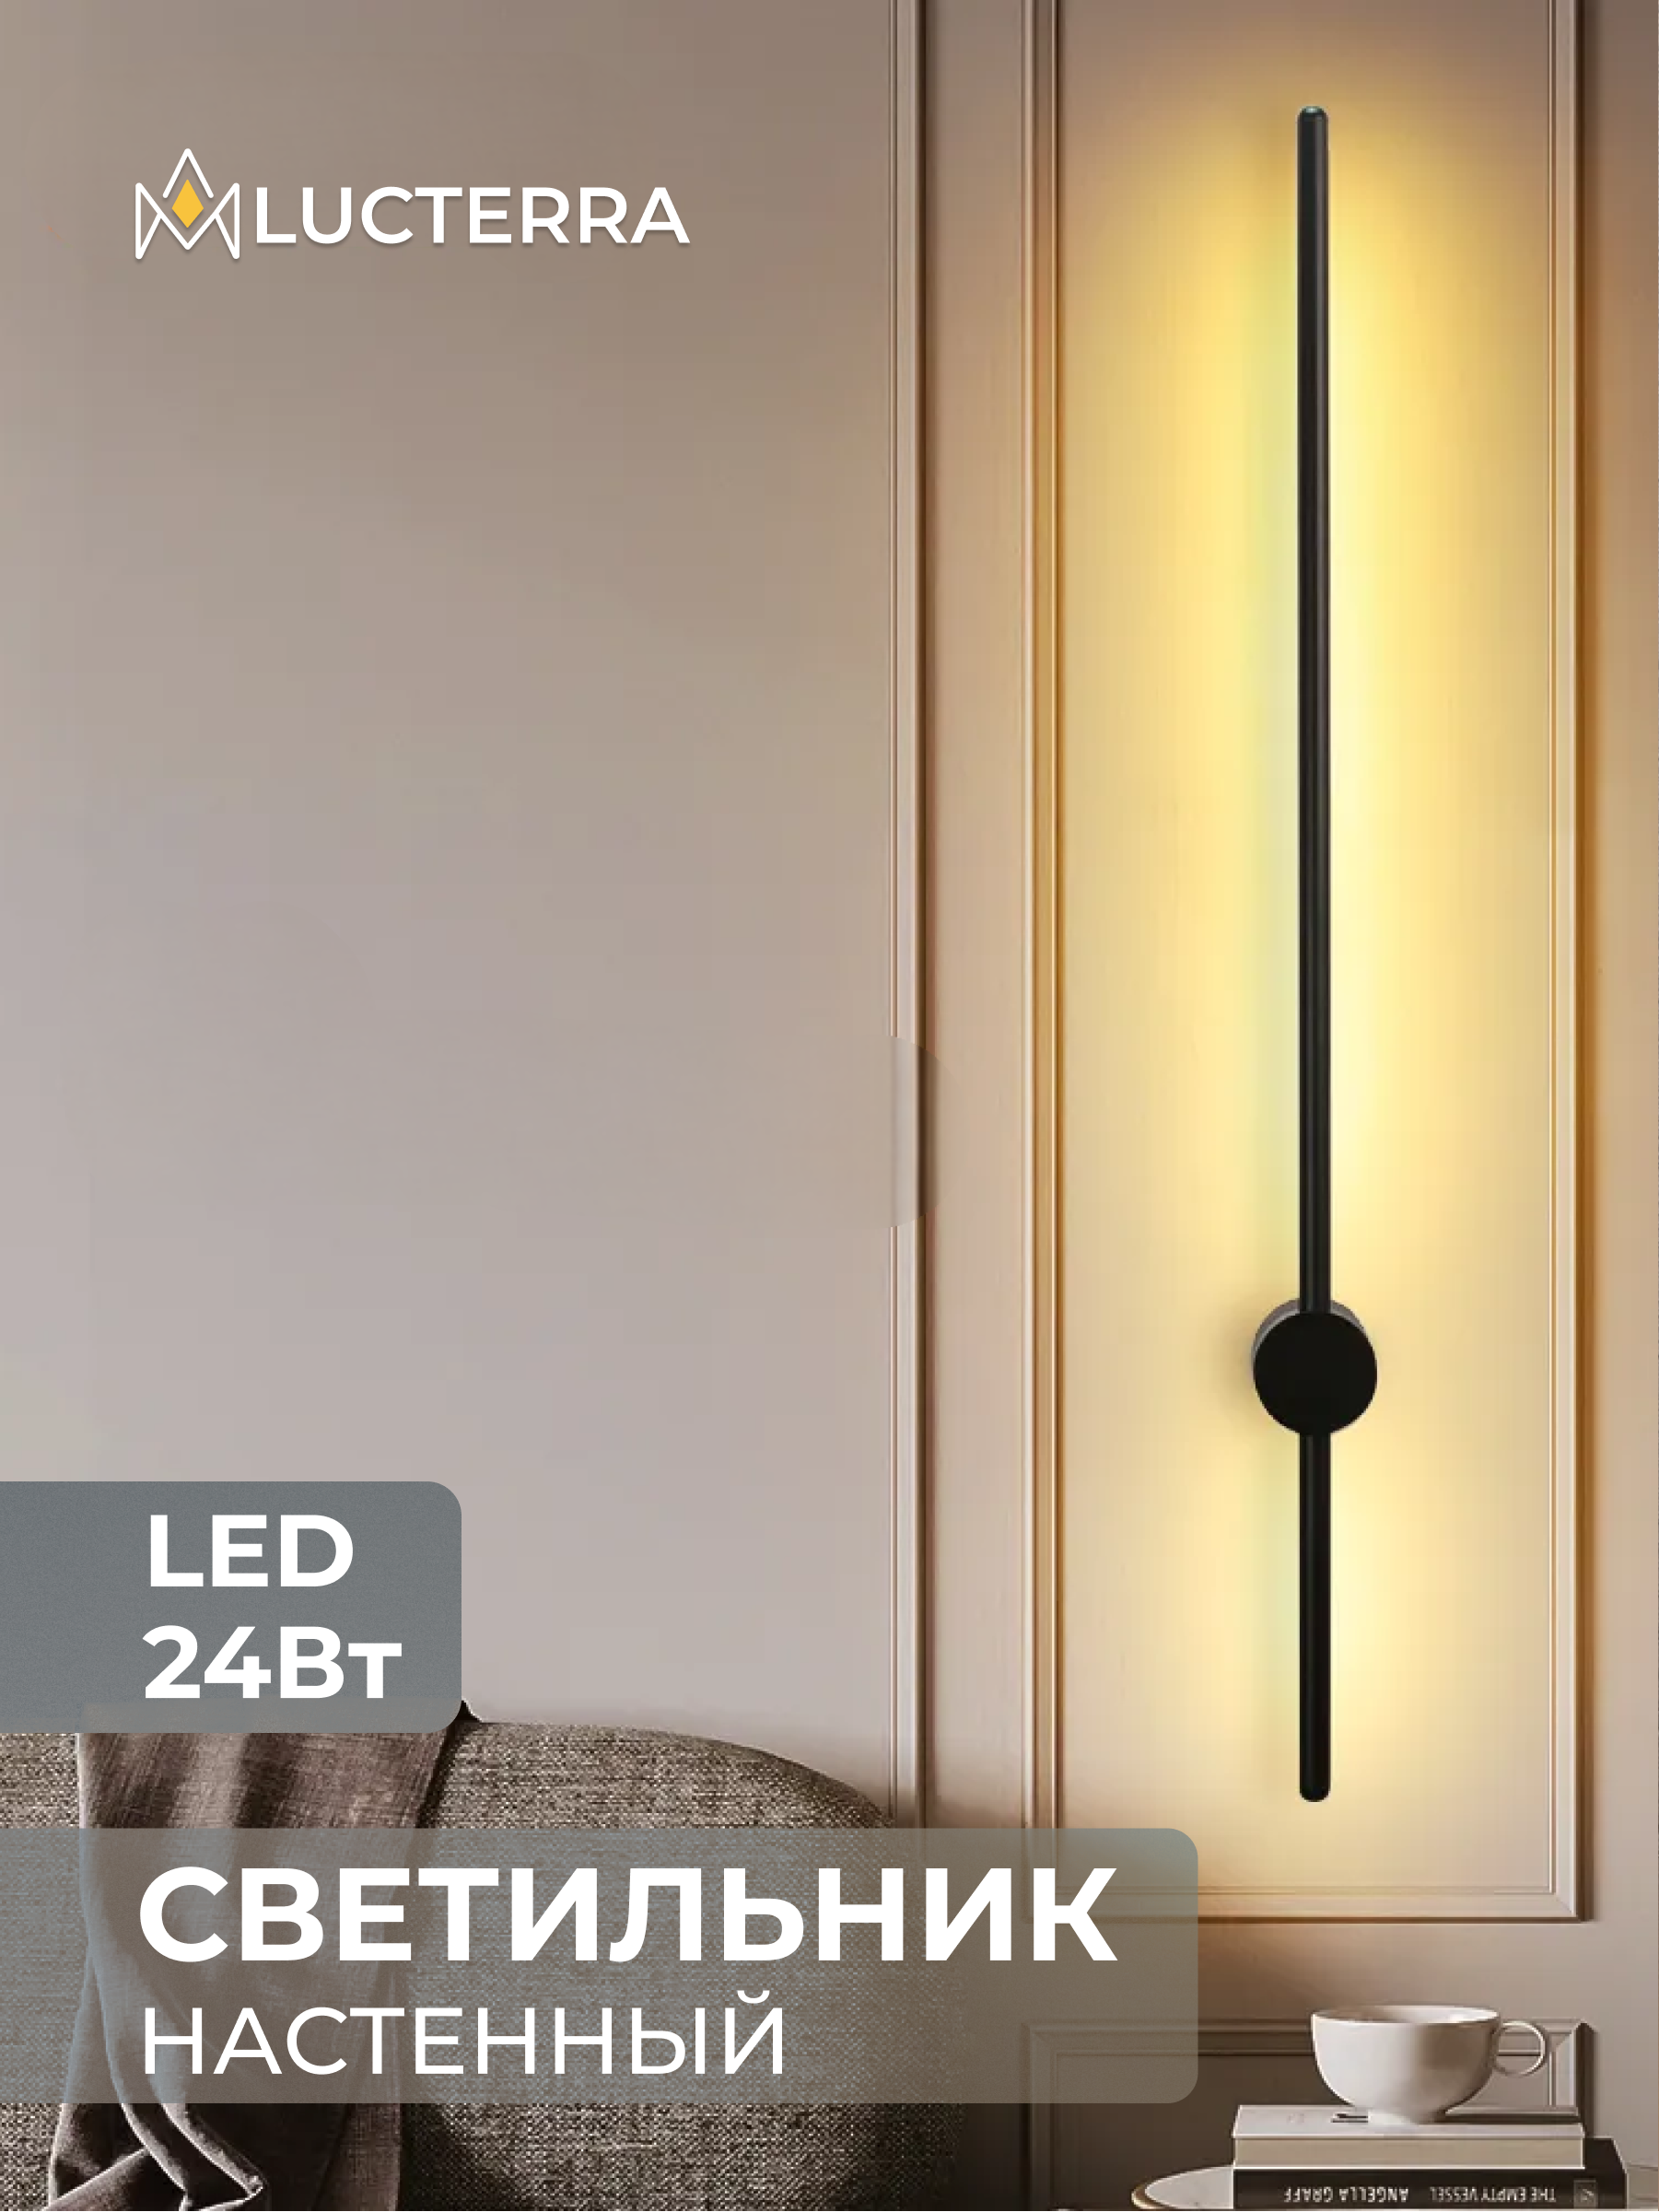 Купить Светильники ночники светодиодные в Москве